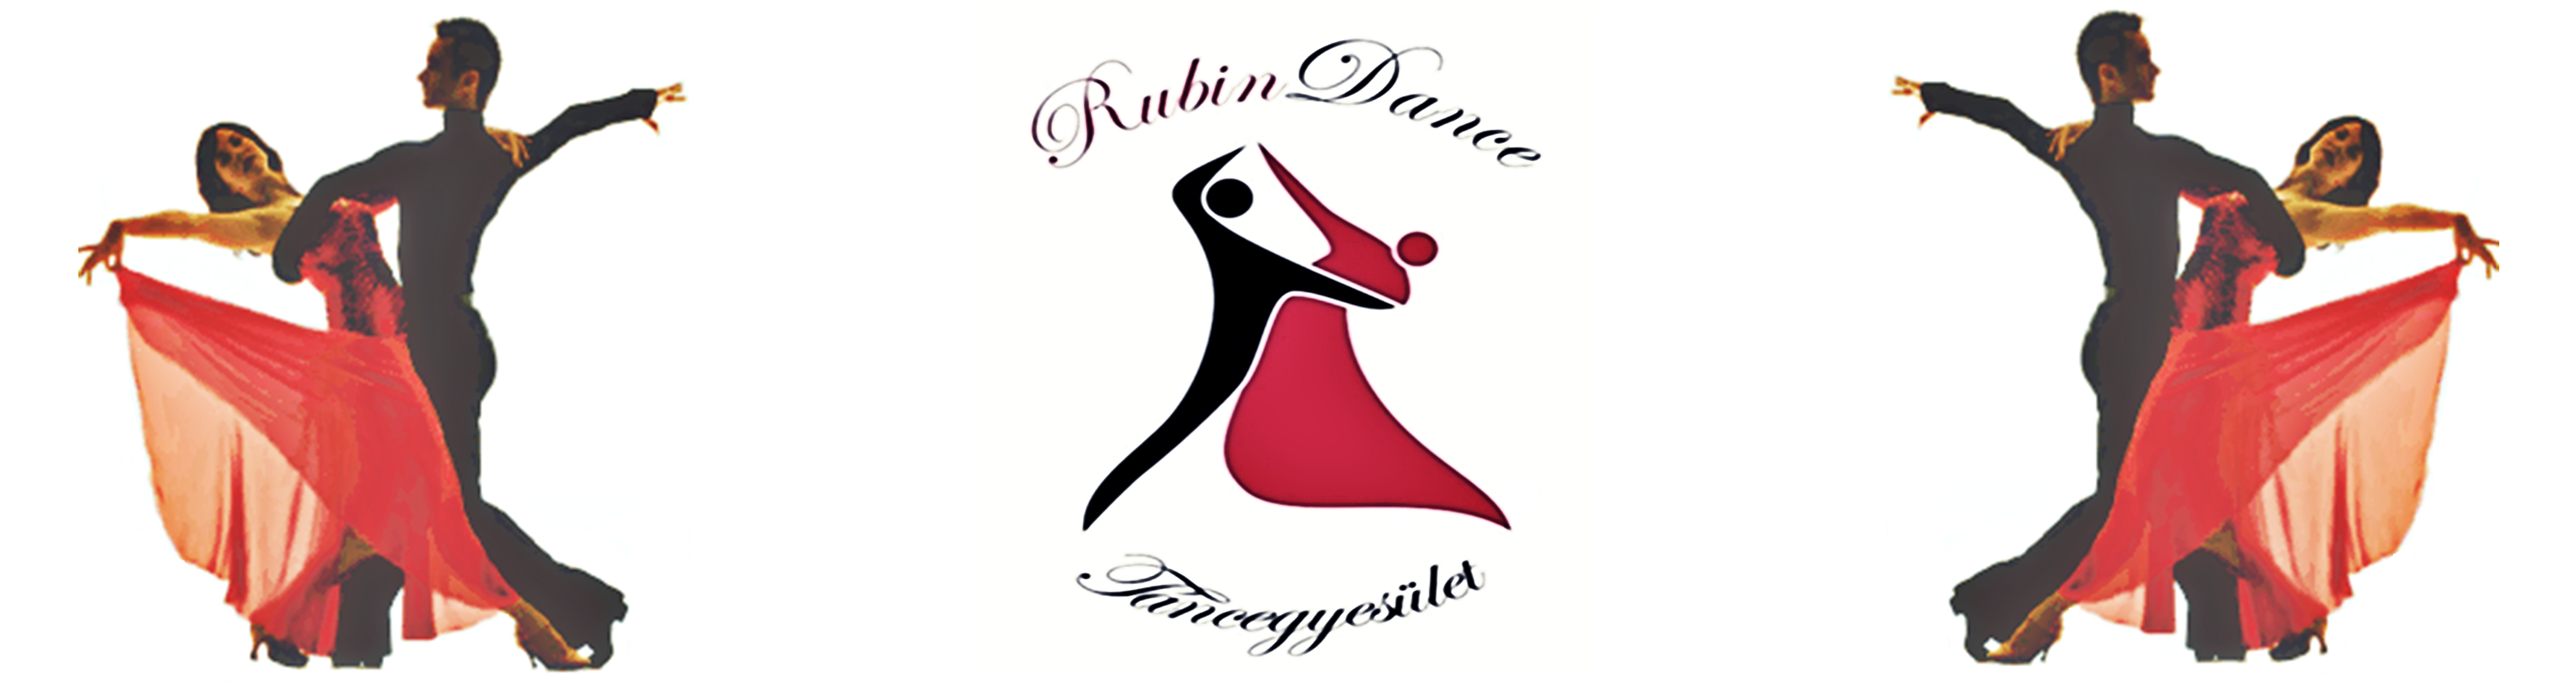 Rubindance Táncsport Egyesület